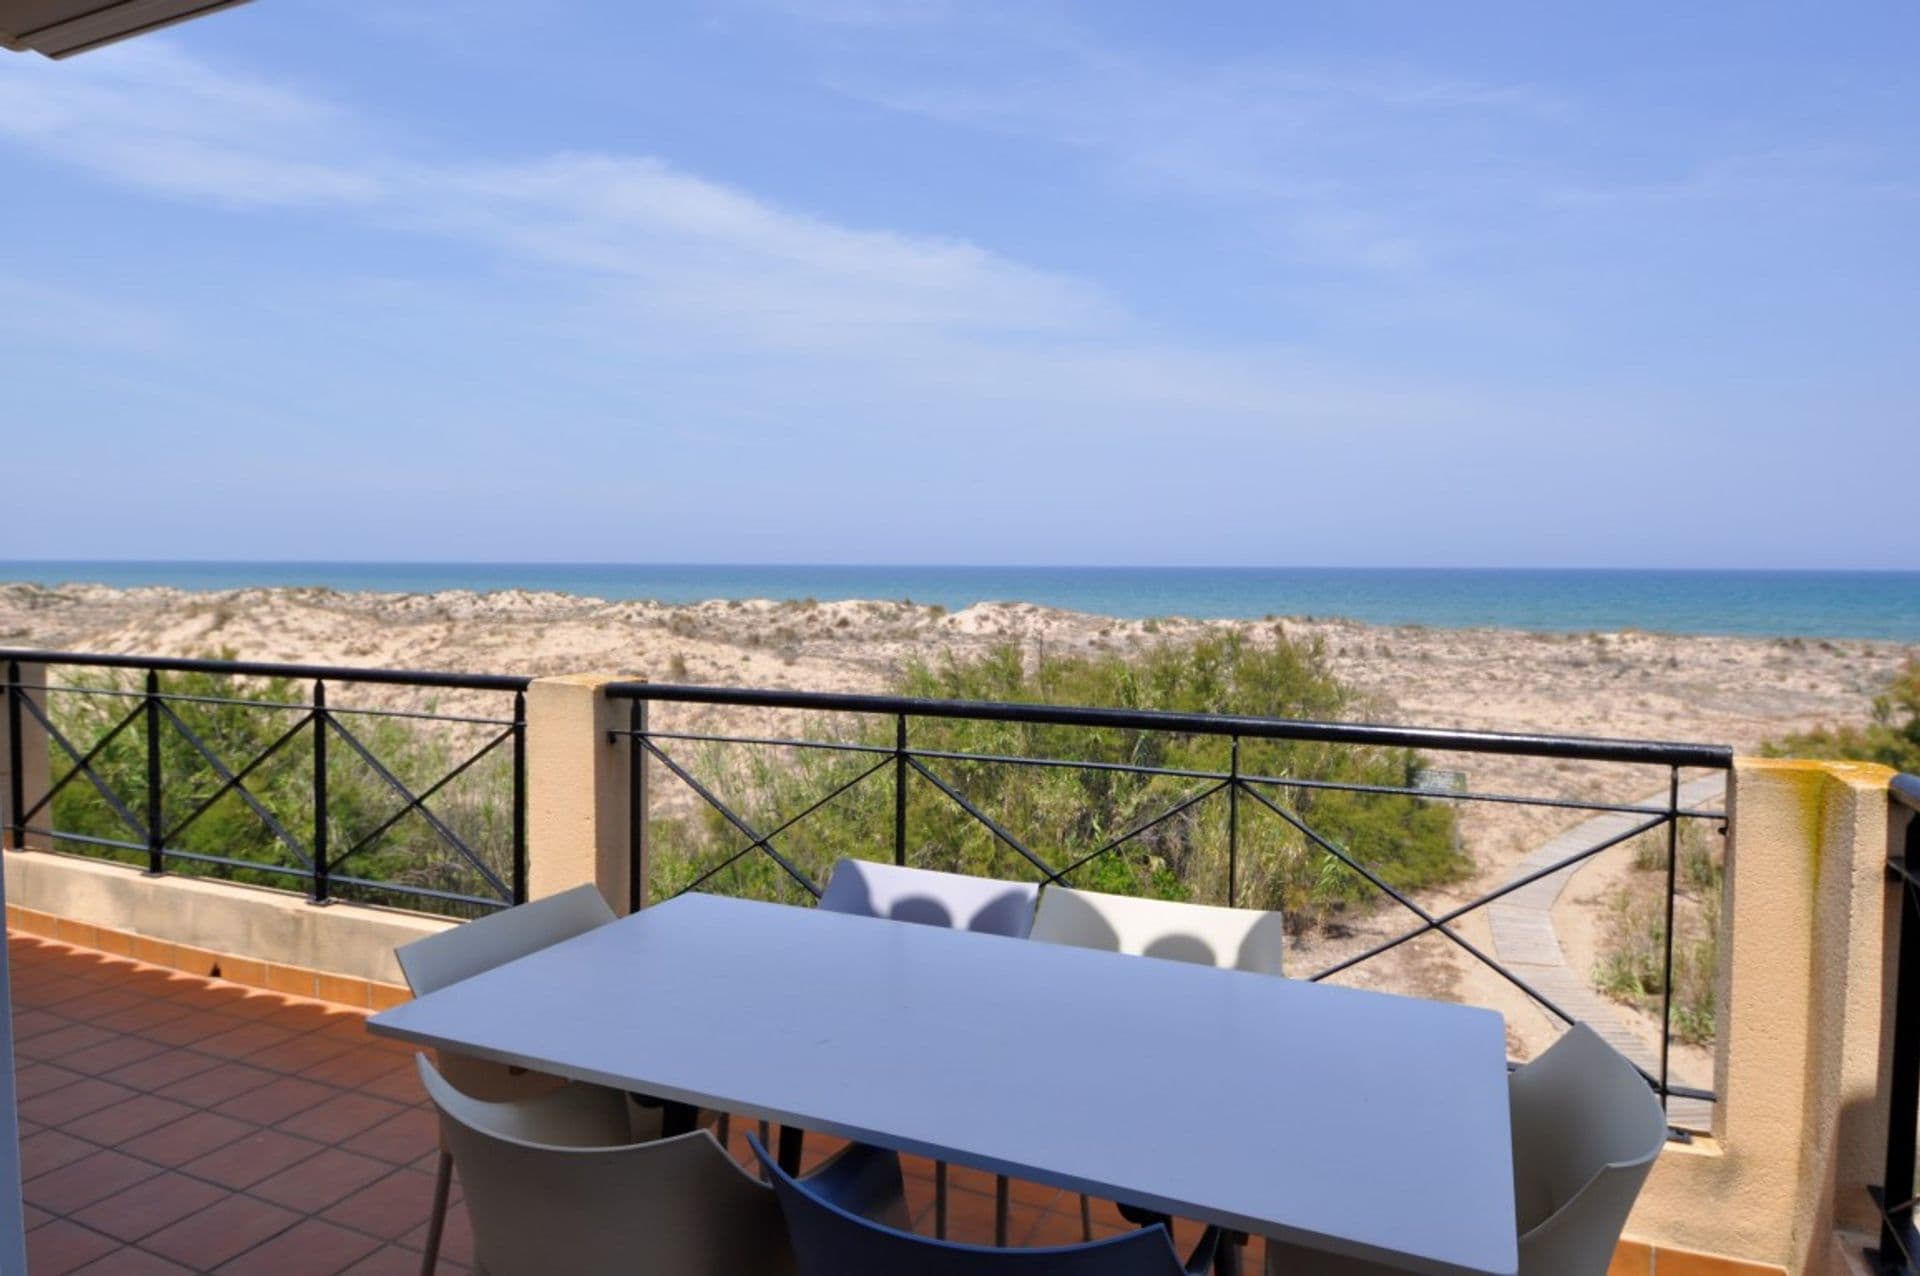 Spacieux appartement situé au bord de la plage à Oliva (Valence).